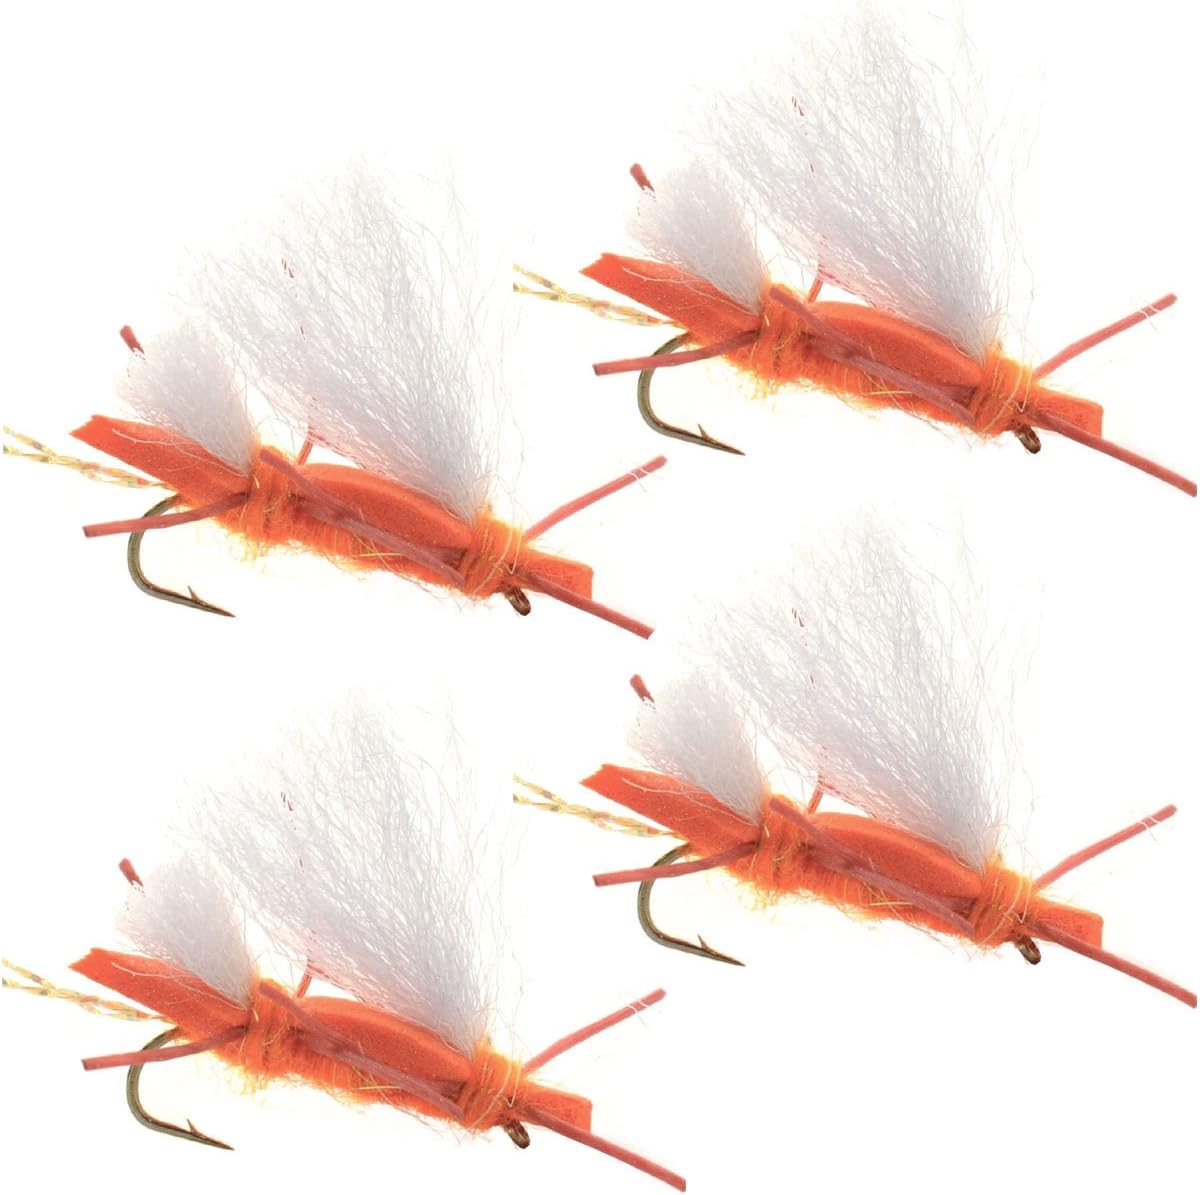 Paquete de 4 moscas de saltamontes con cuerpo de espuma naranja Chubby Chernobyl Ant, tamaño de gancho 10